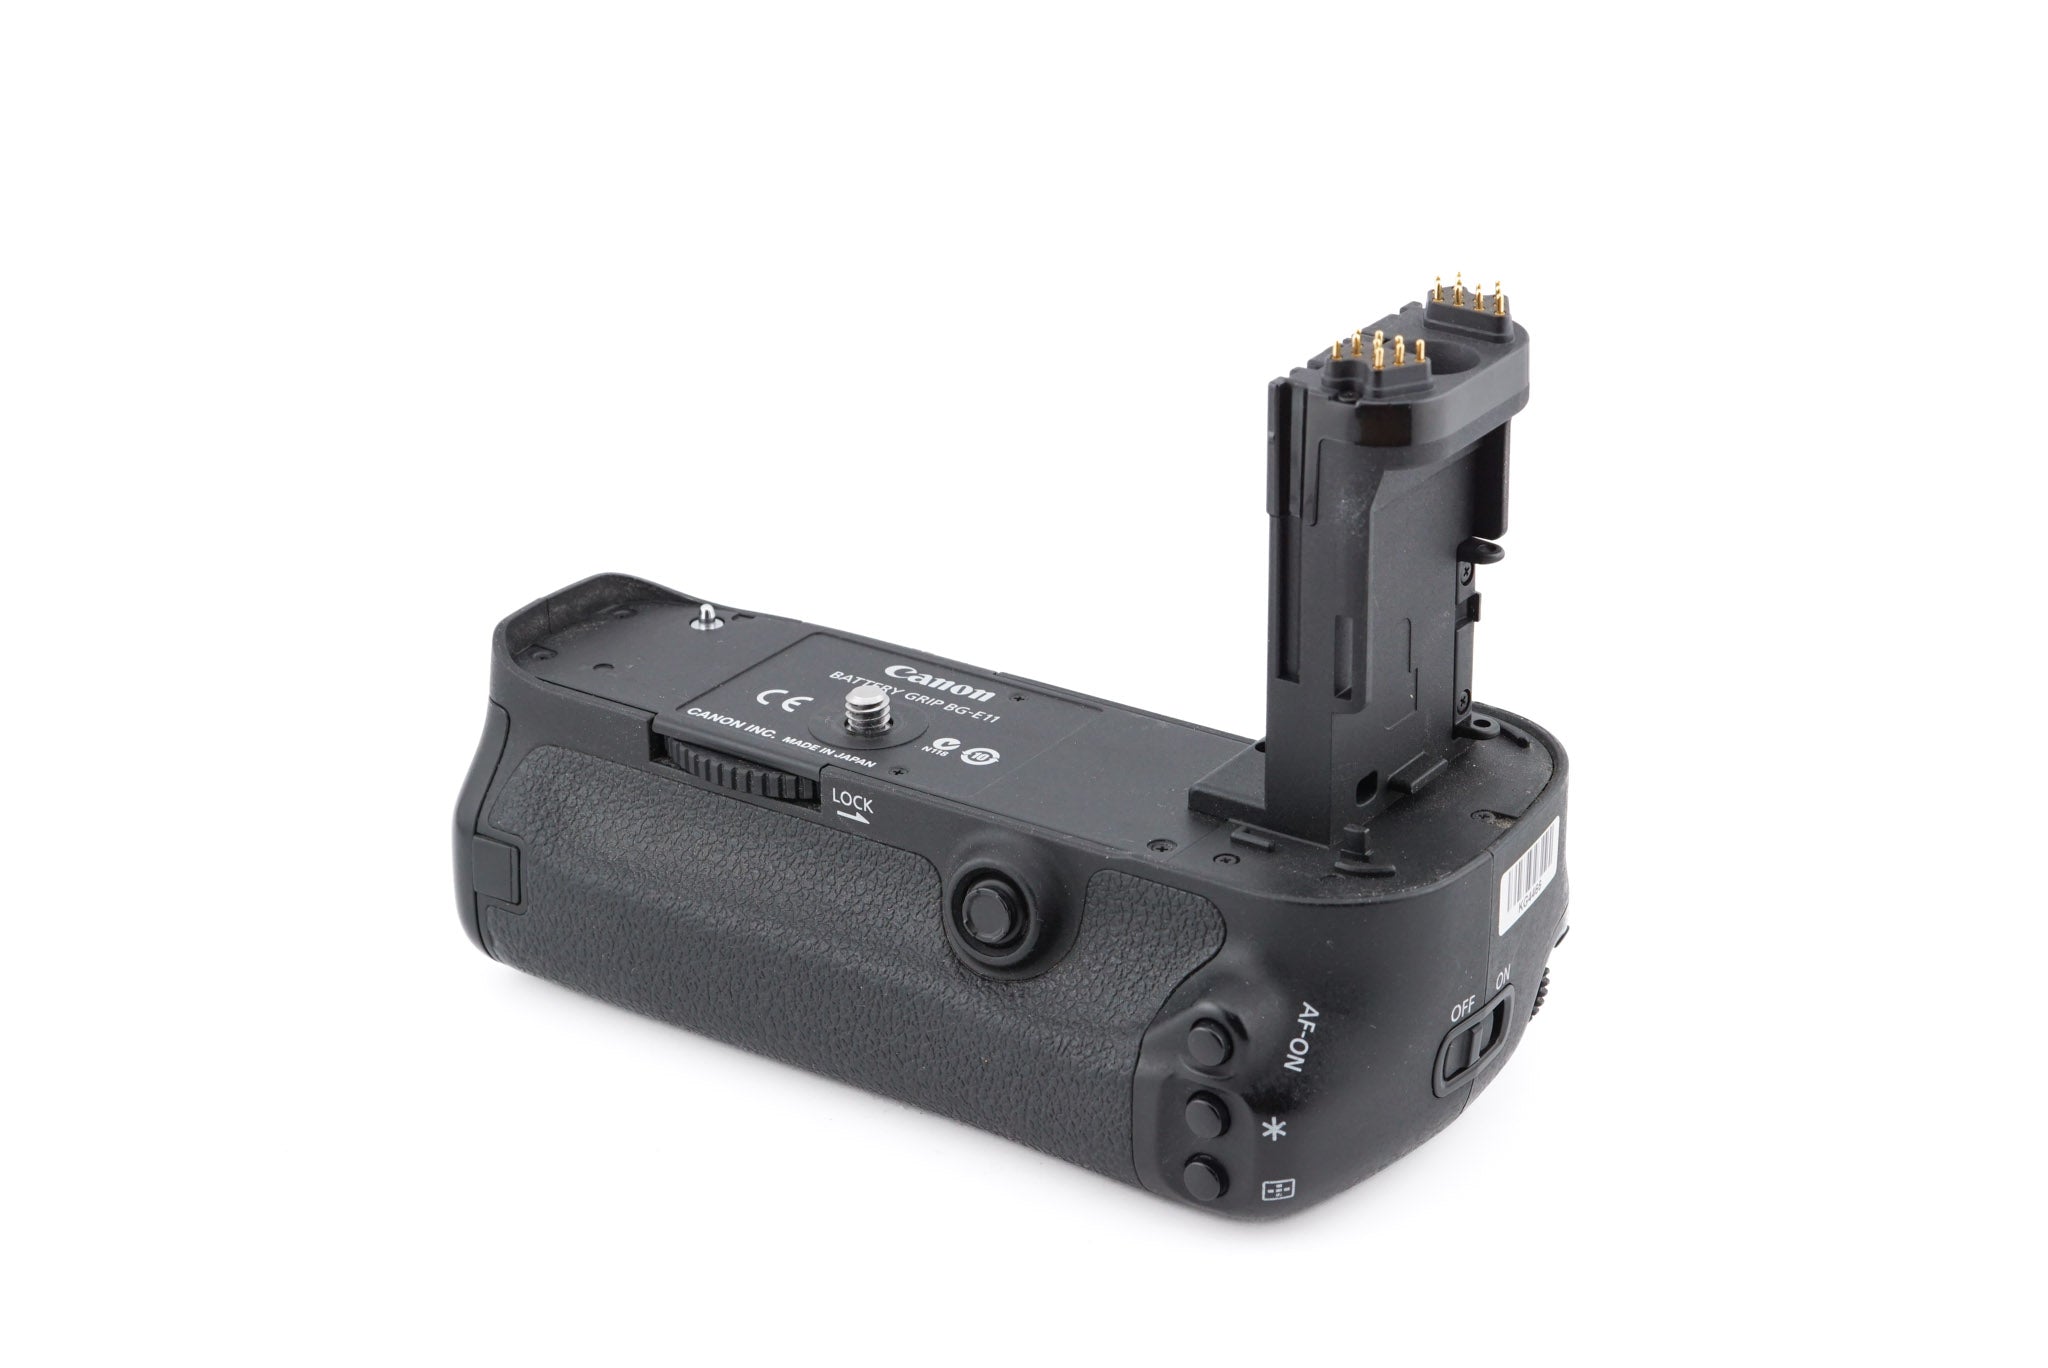 Canon EOS 5DS + BG-E11 Battery Grip – Kamerastore